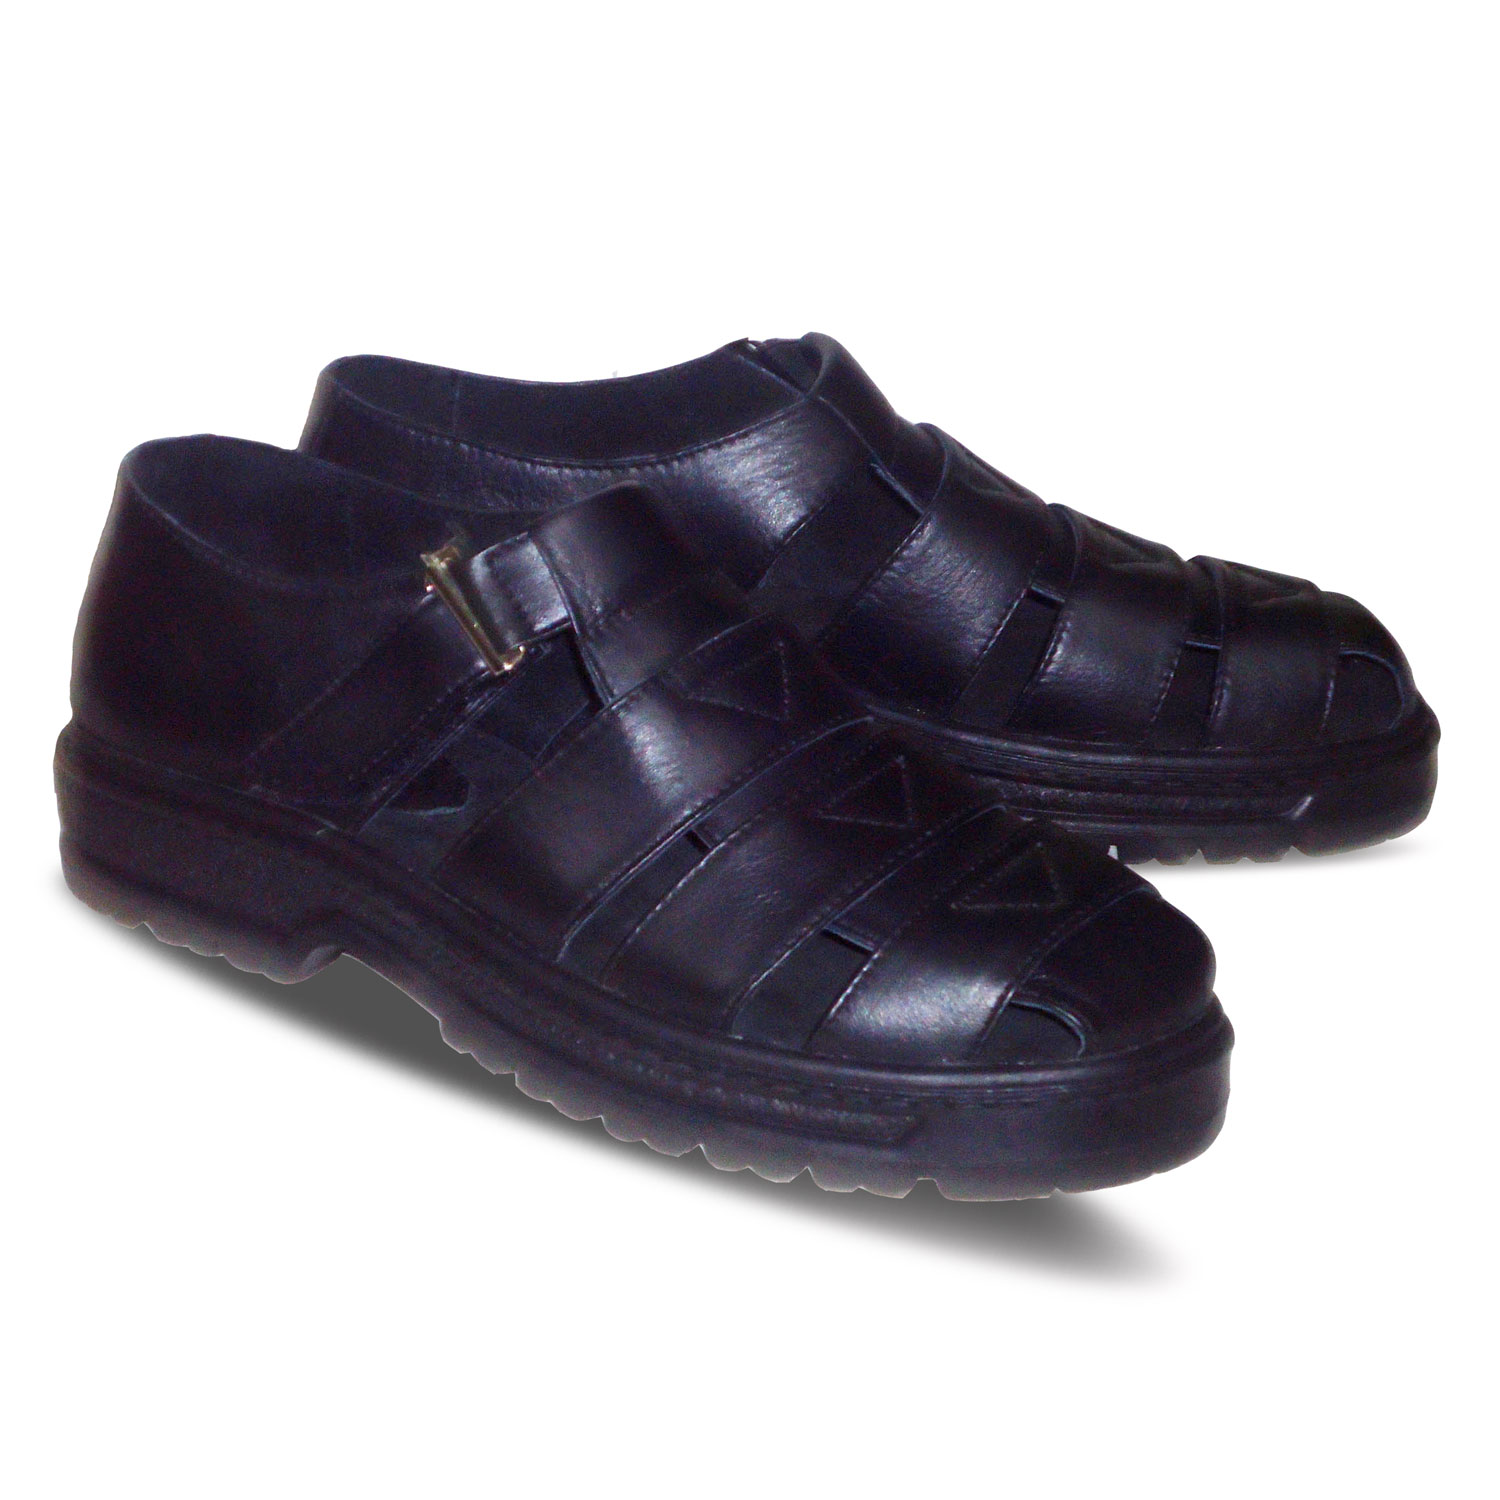 sepatu kulit pria casual C01 black - 2 - atmal